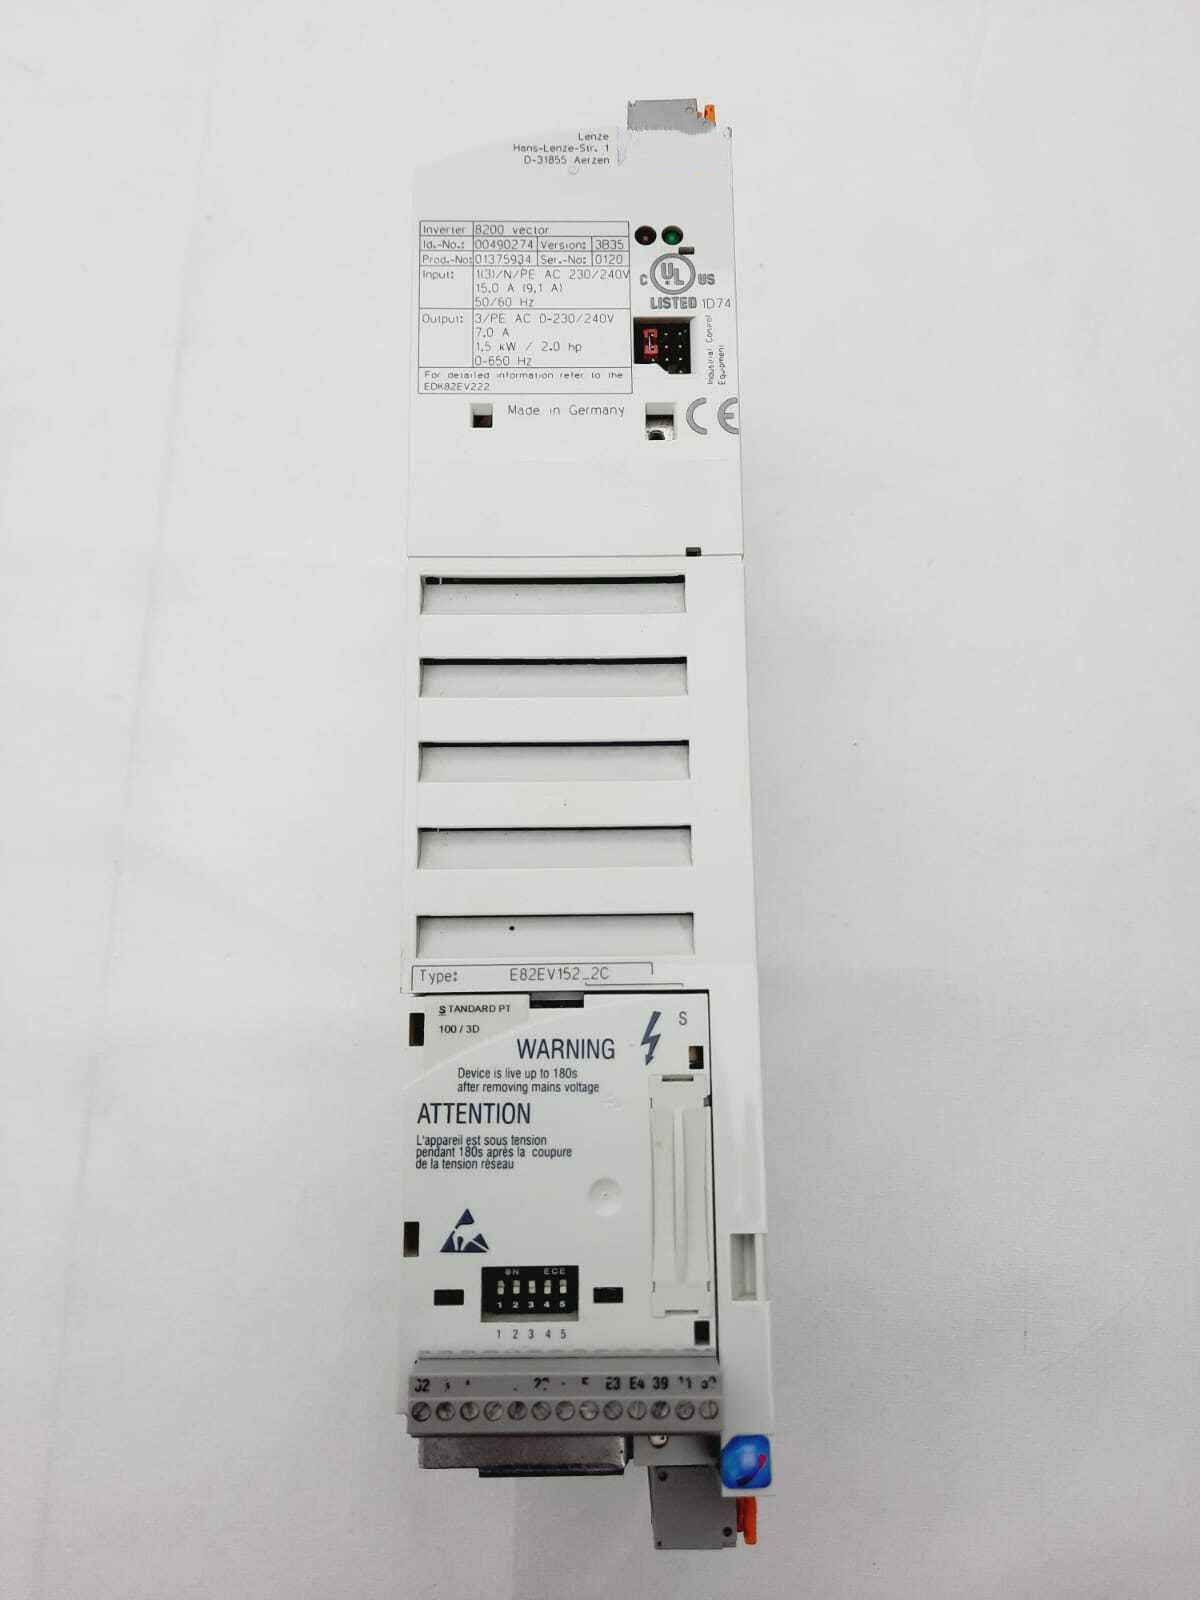 New LENZE E82EV152_2C000 Inverter